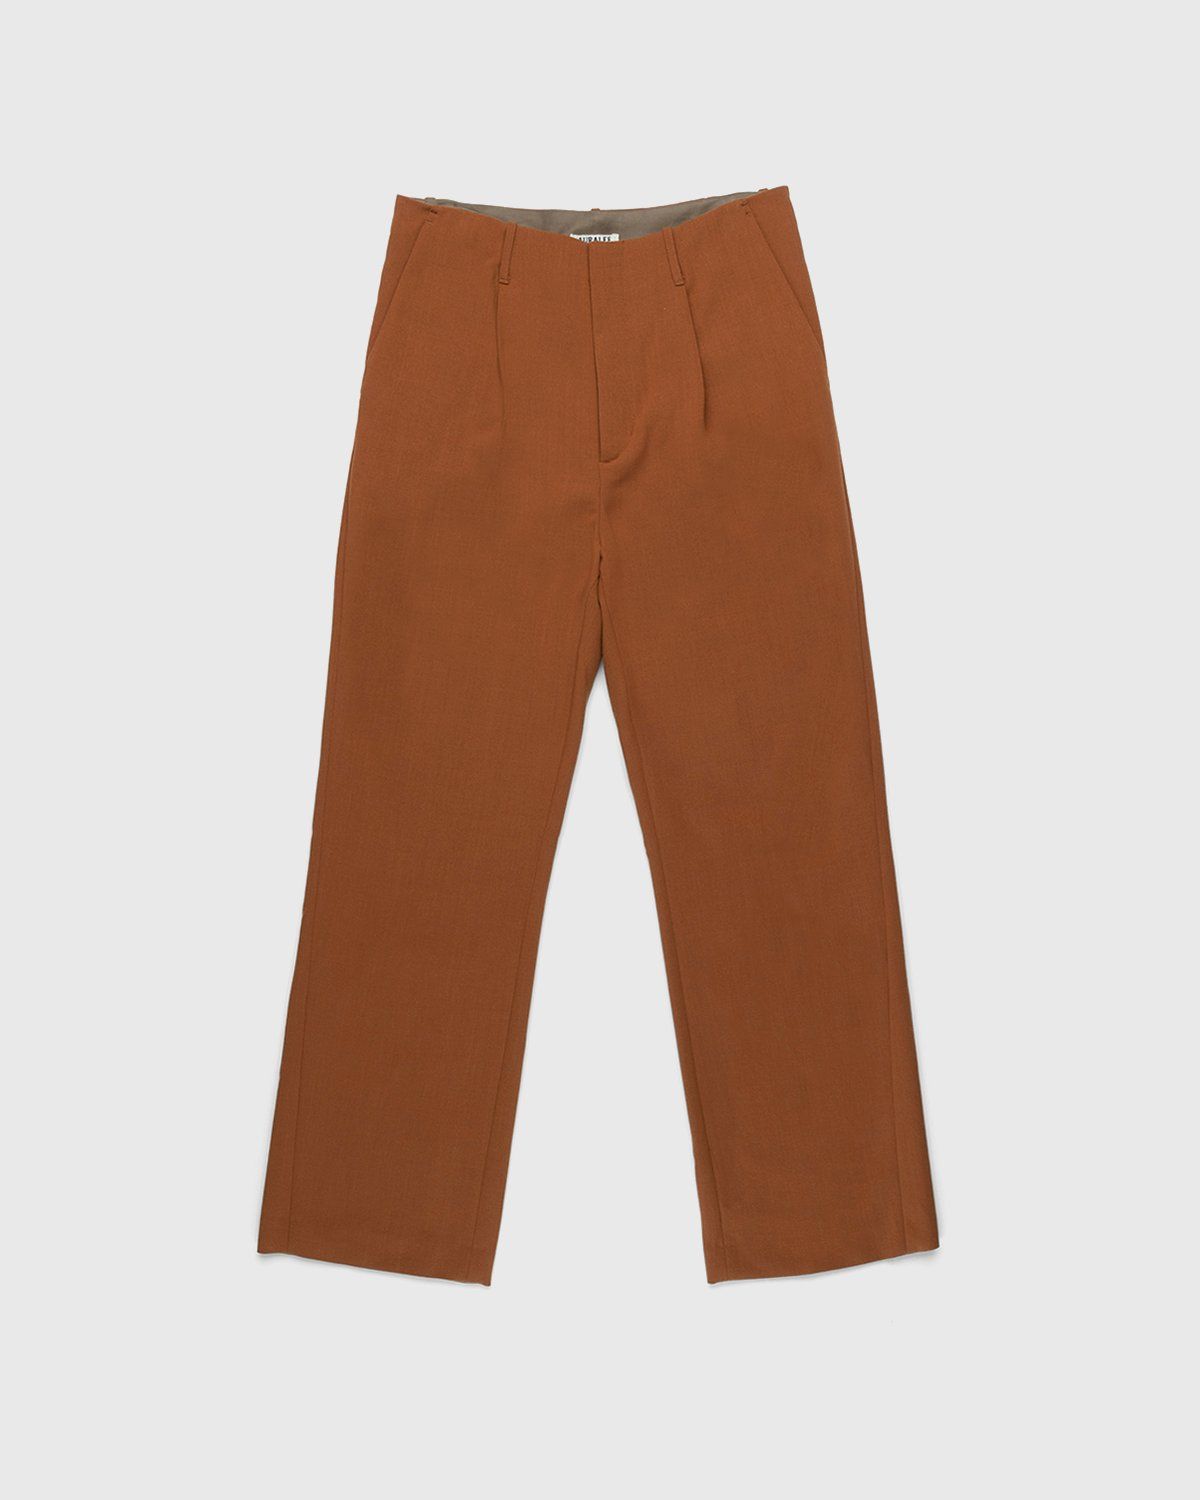 Auralee – Ultra-Fine Wool Pants Dark Orange - Trousers - Orange - Image 1